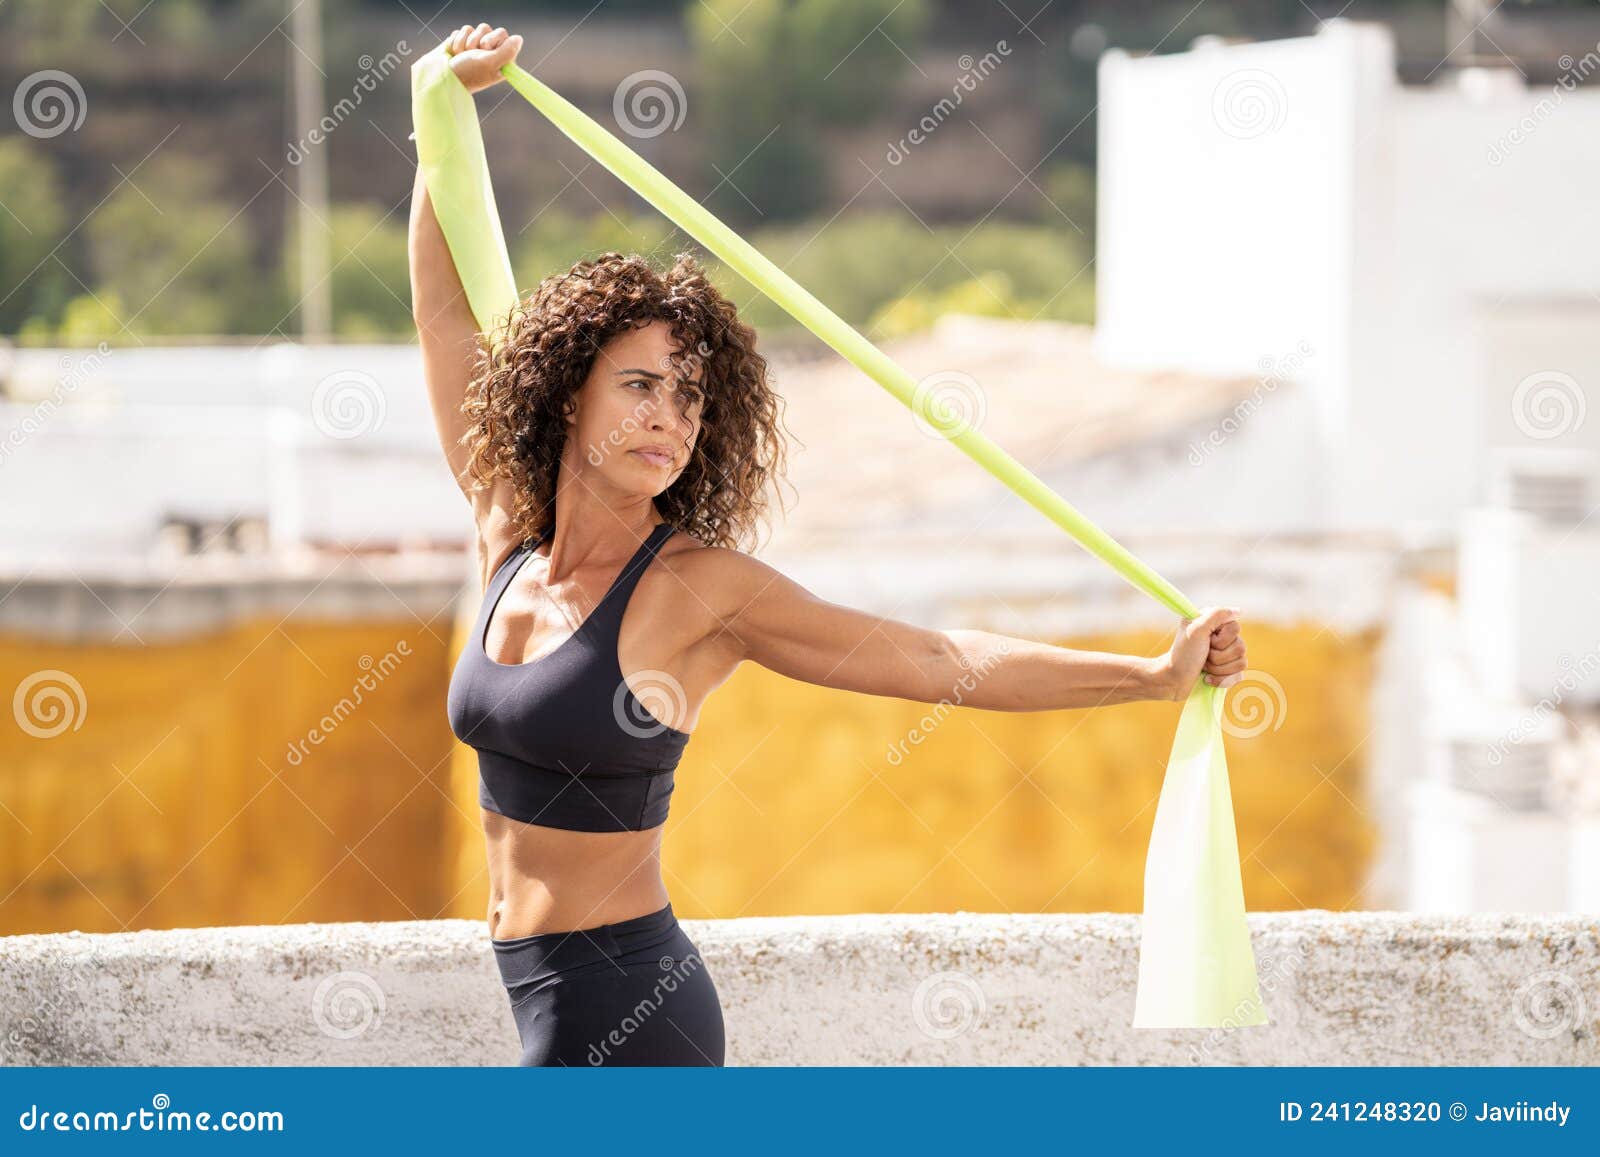 Mujer de mediana edad con cuerpo fitness trabajando en la terraza